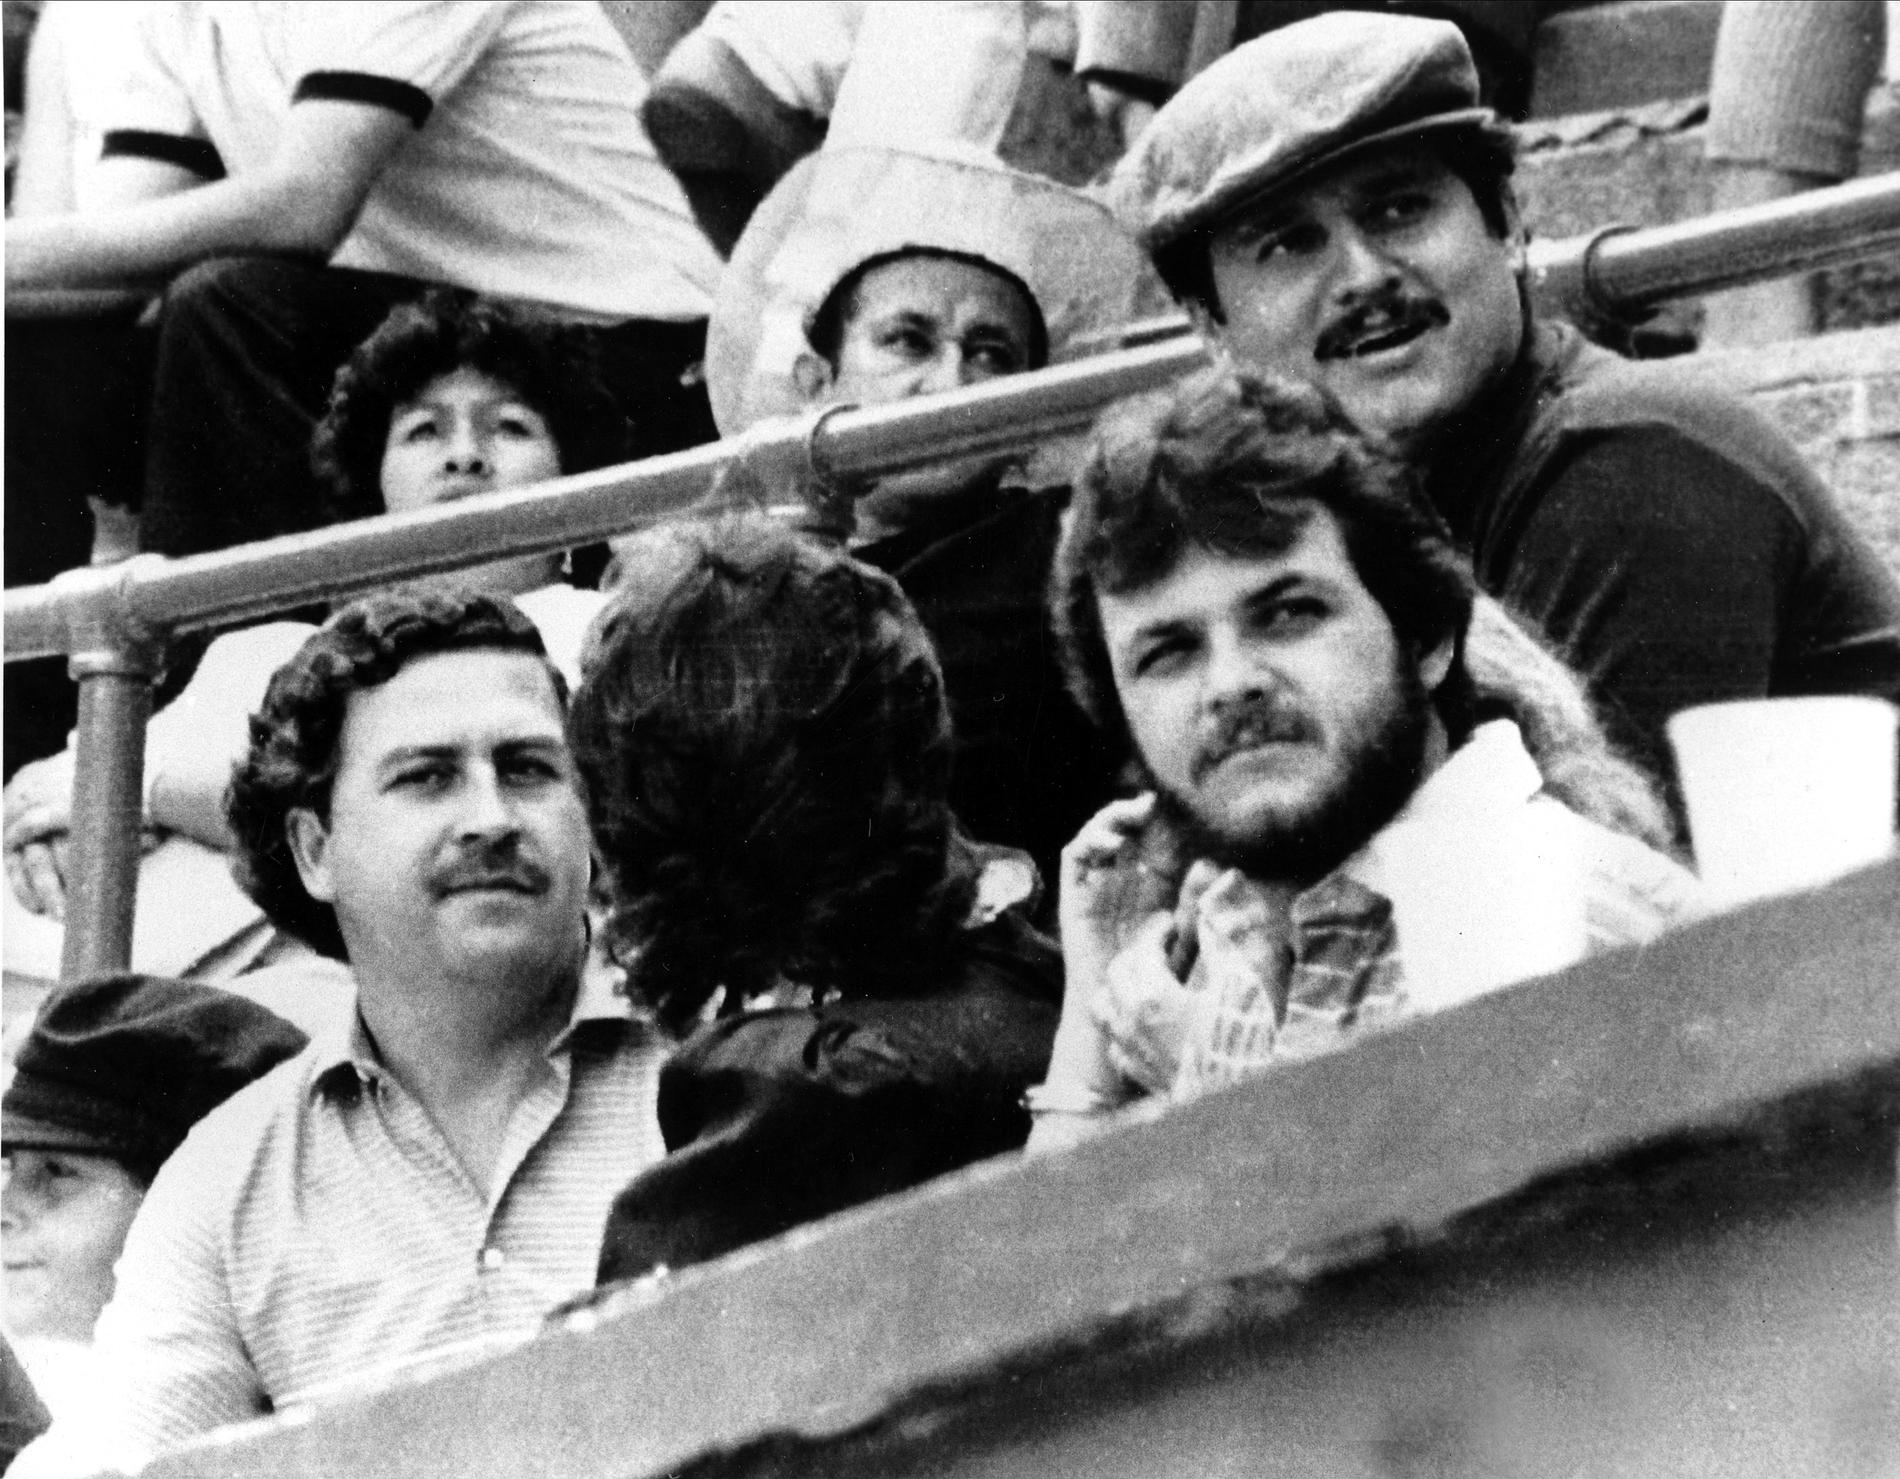 Pablo Escobar, till vänster.